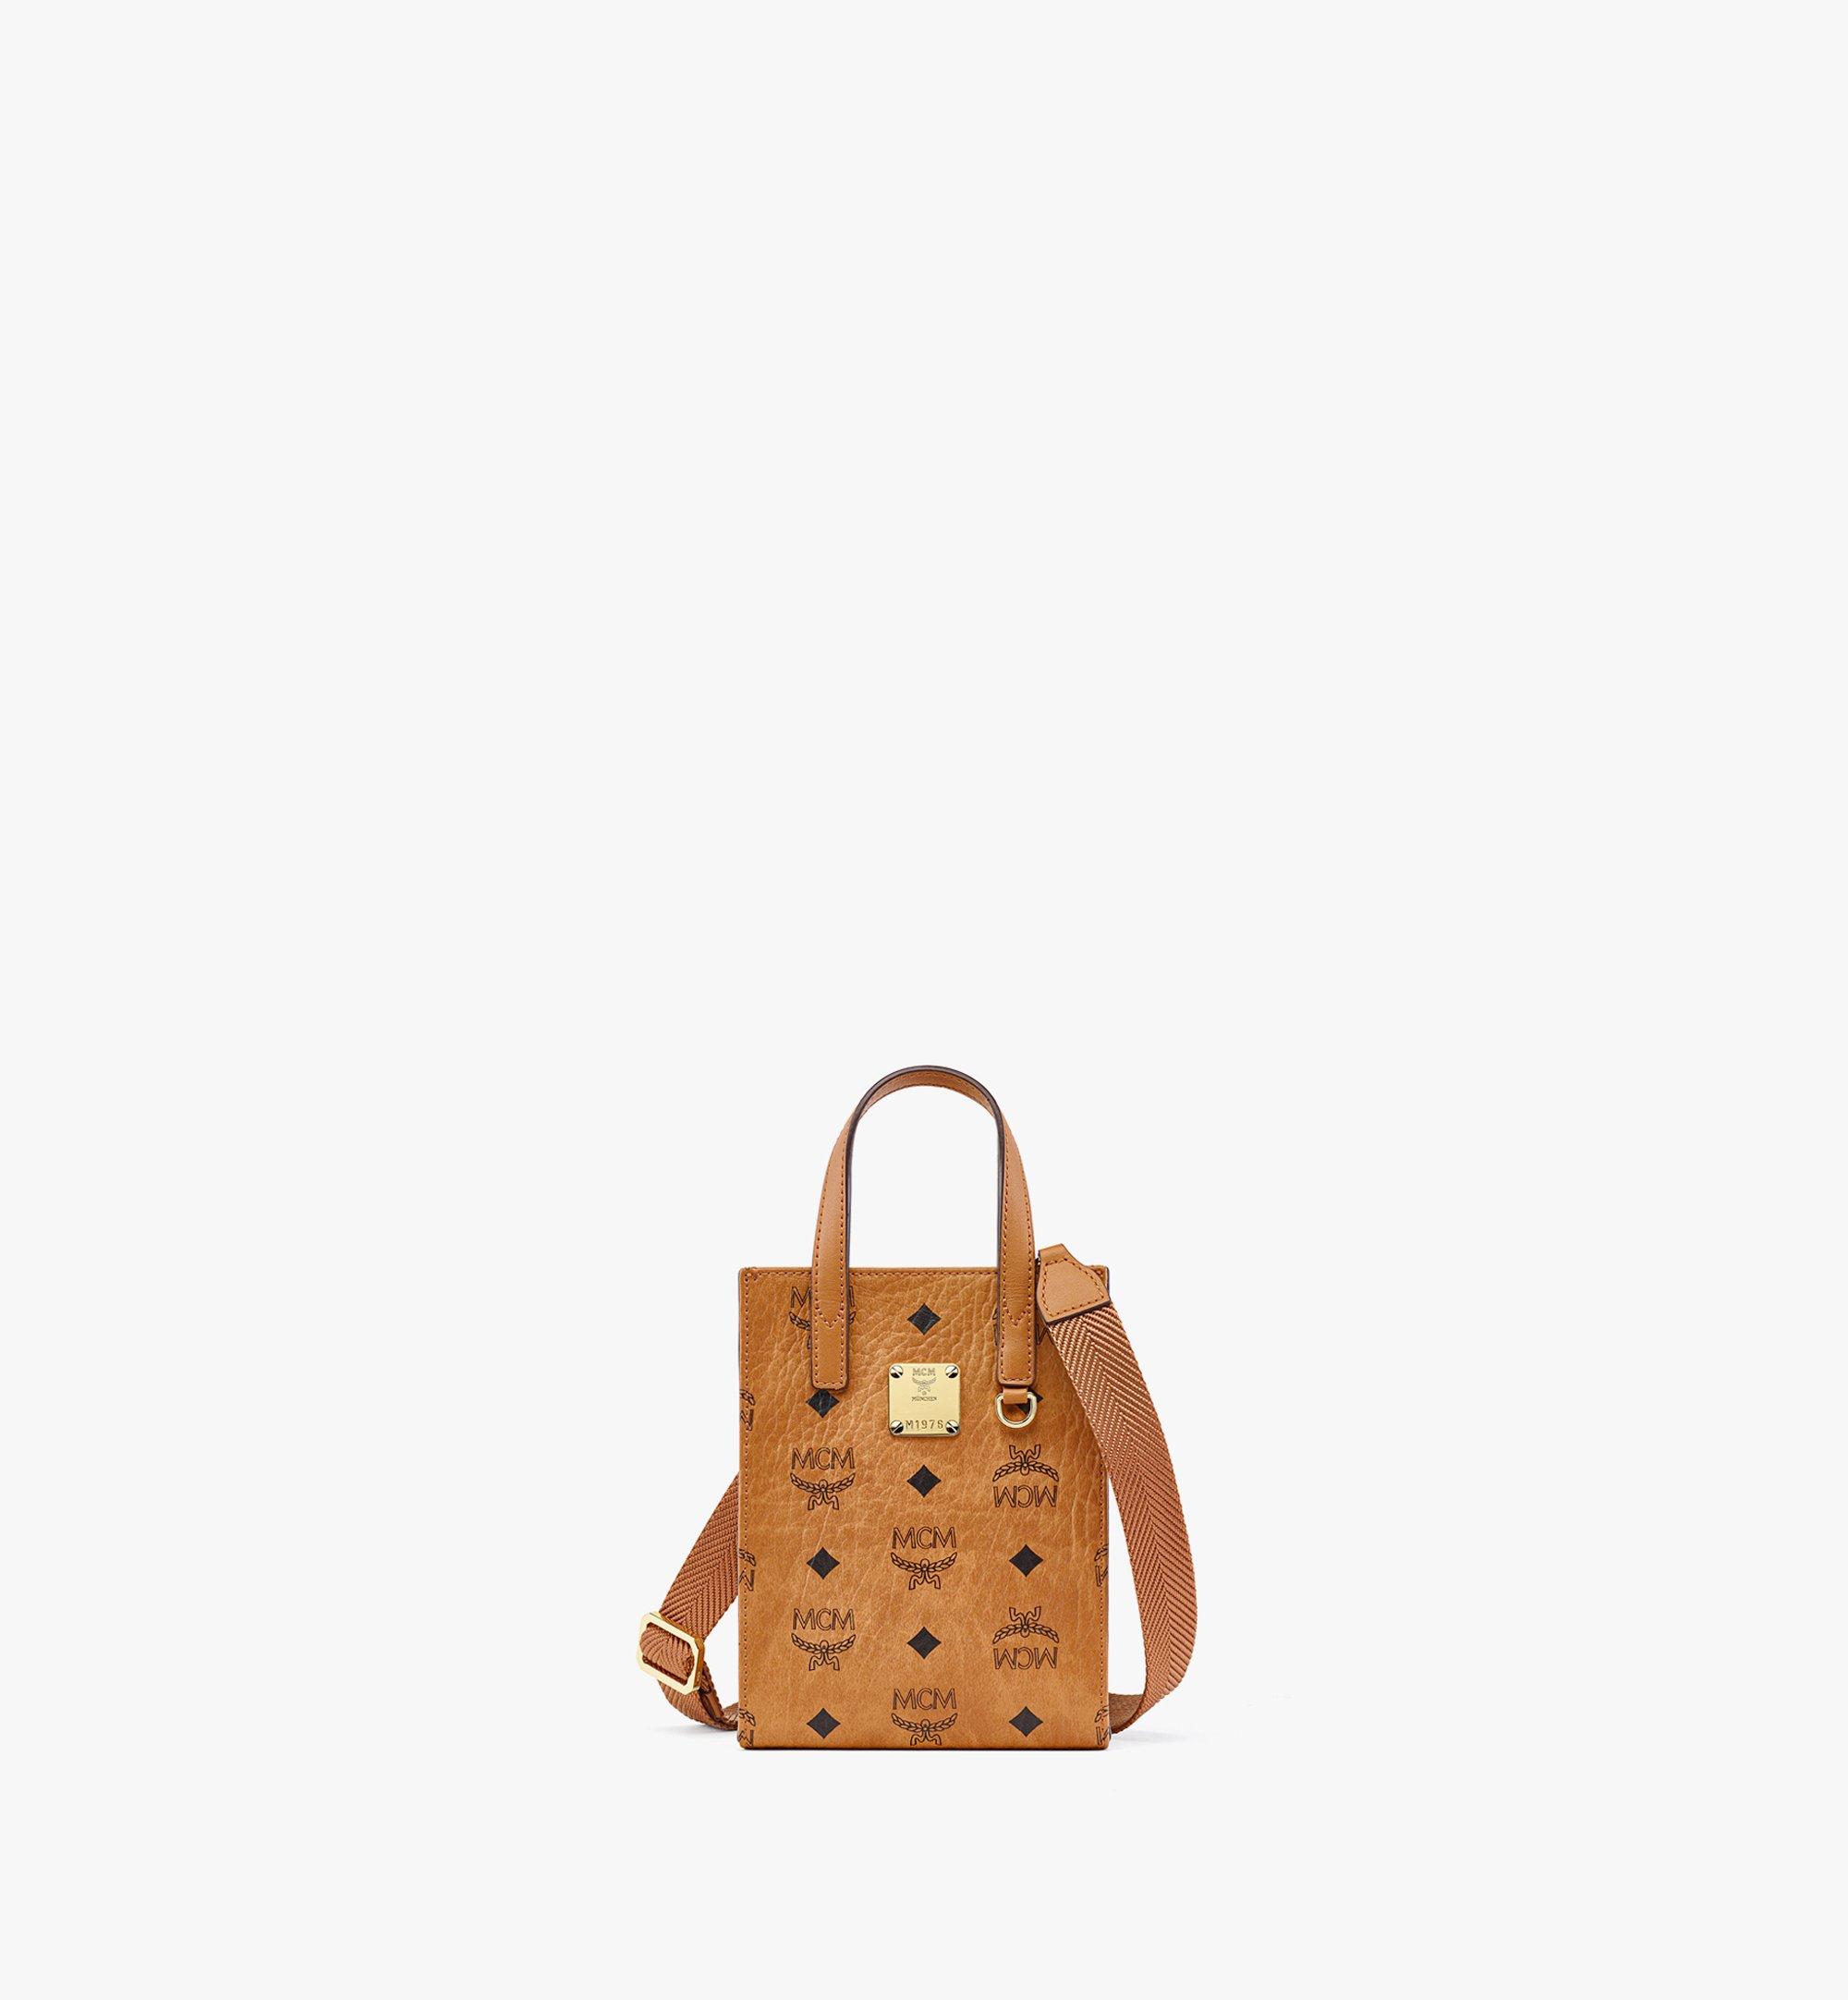 Designer Leather Mini Bags & Backpacks For Women